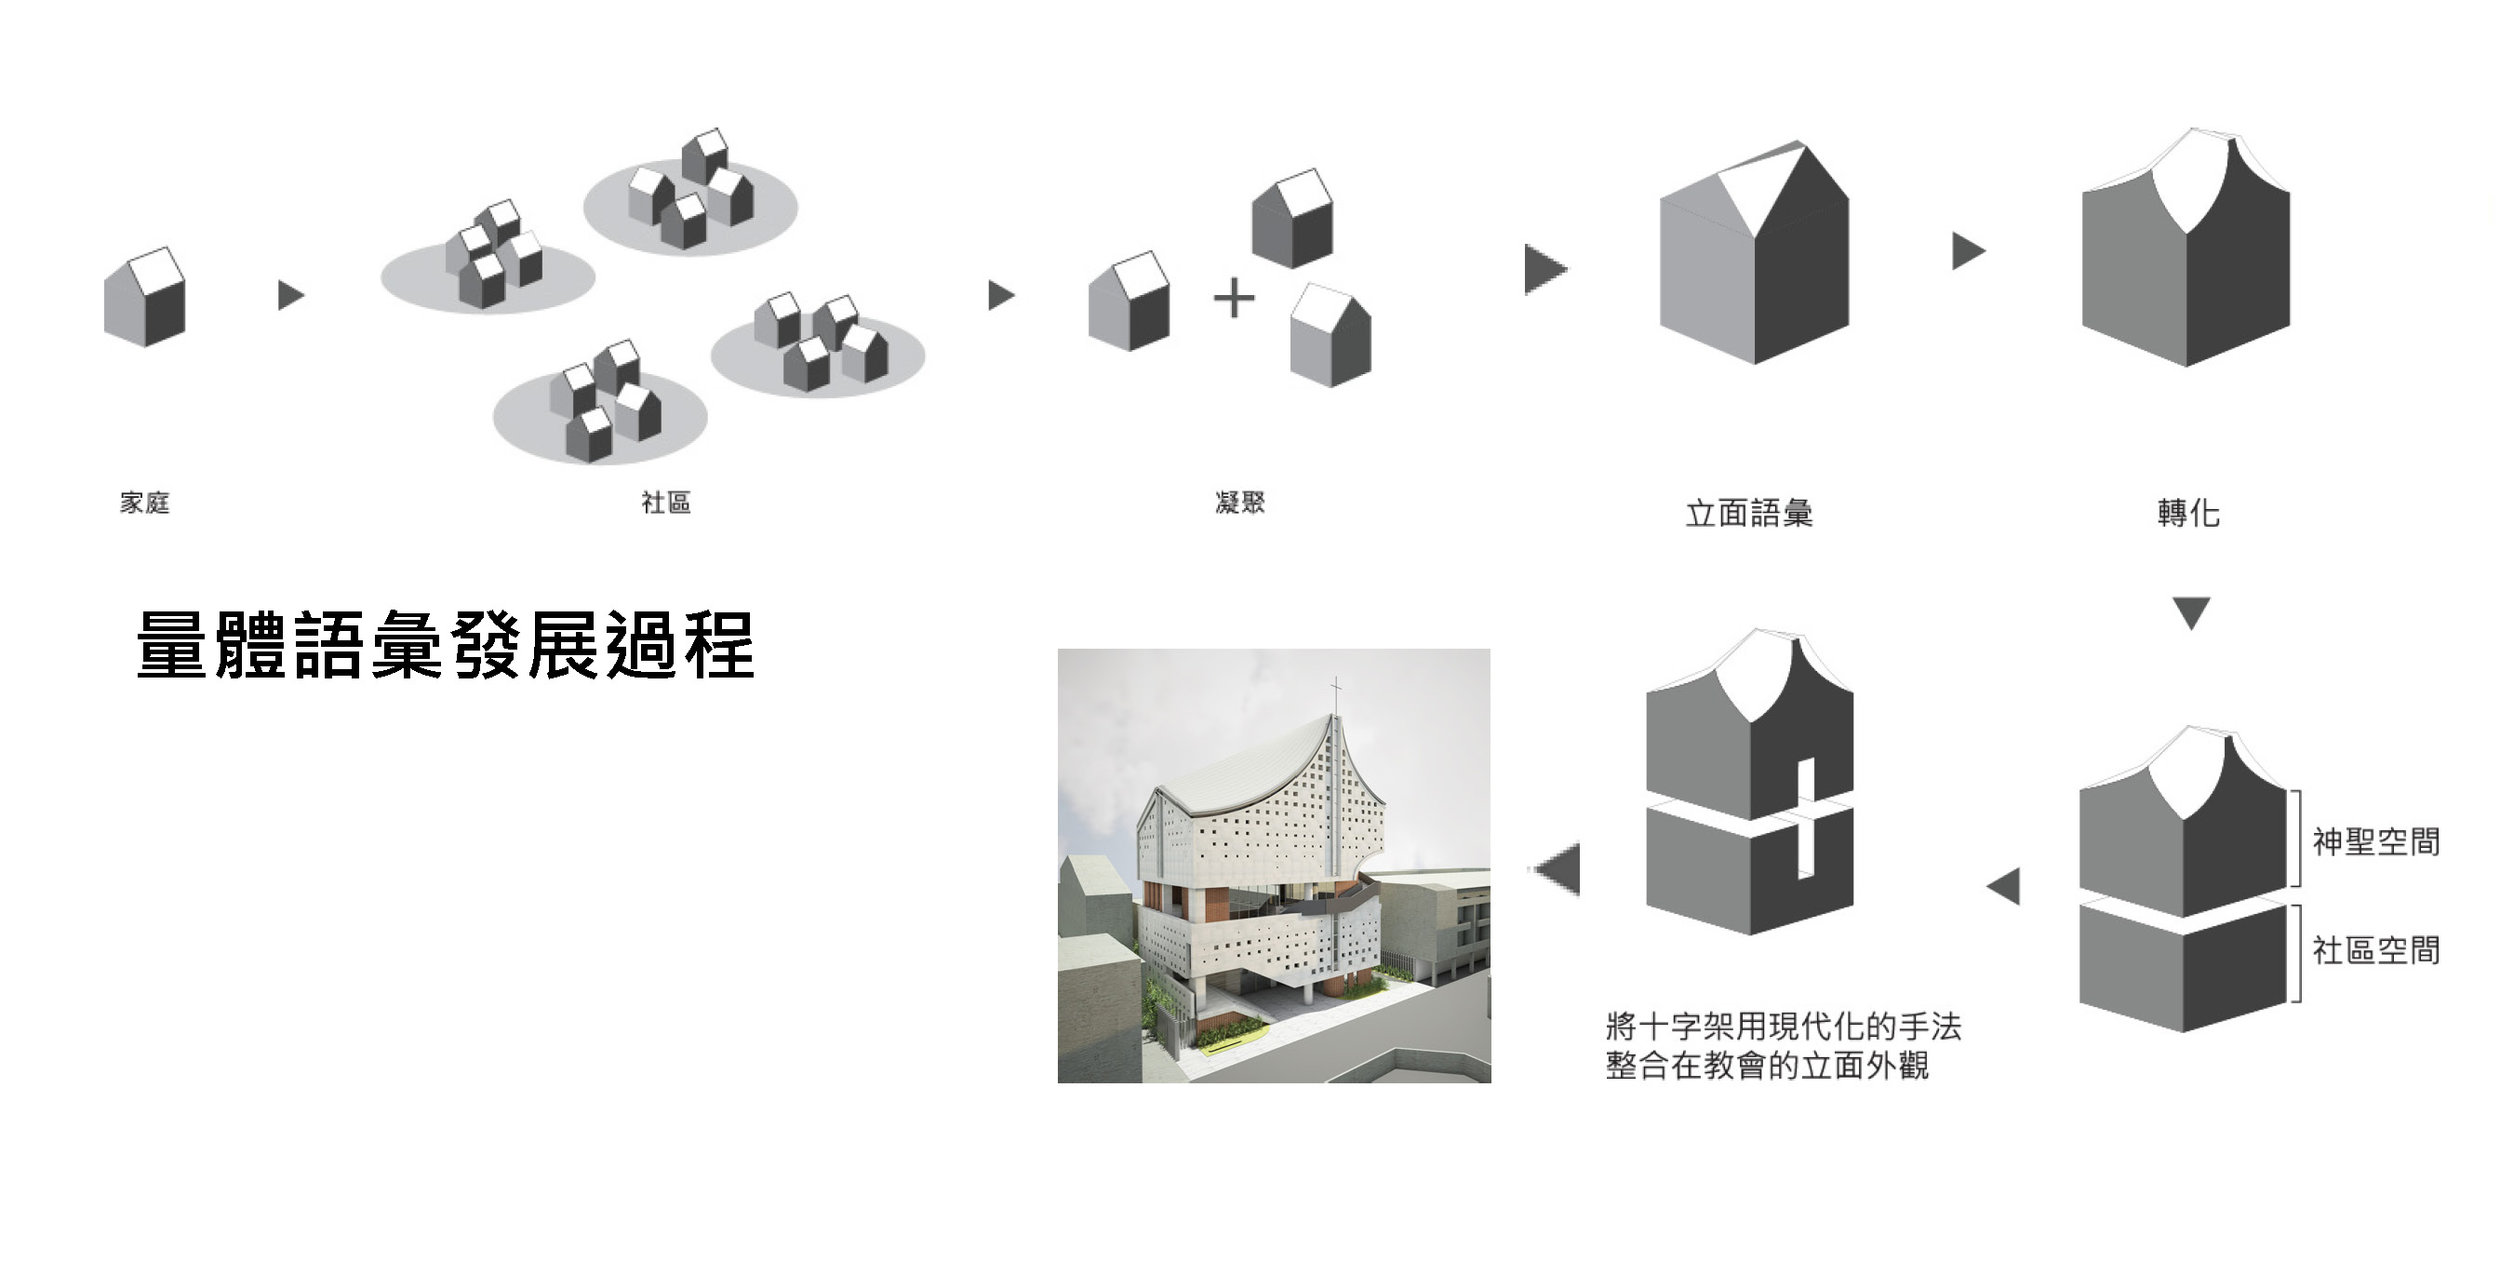 德光教會第二階段設計簡報20140109-5 all3_Page_05.jpg